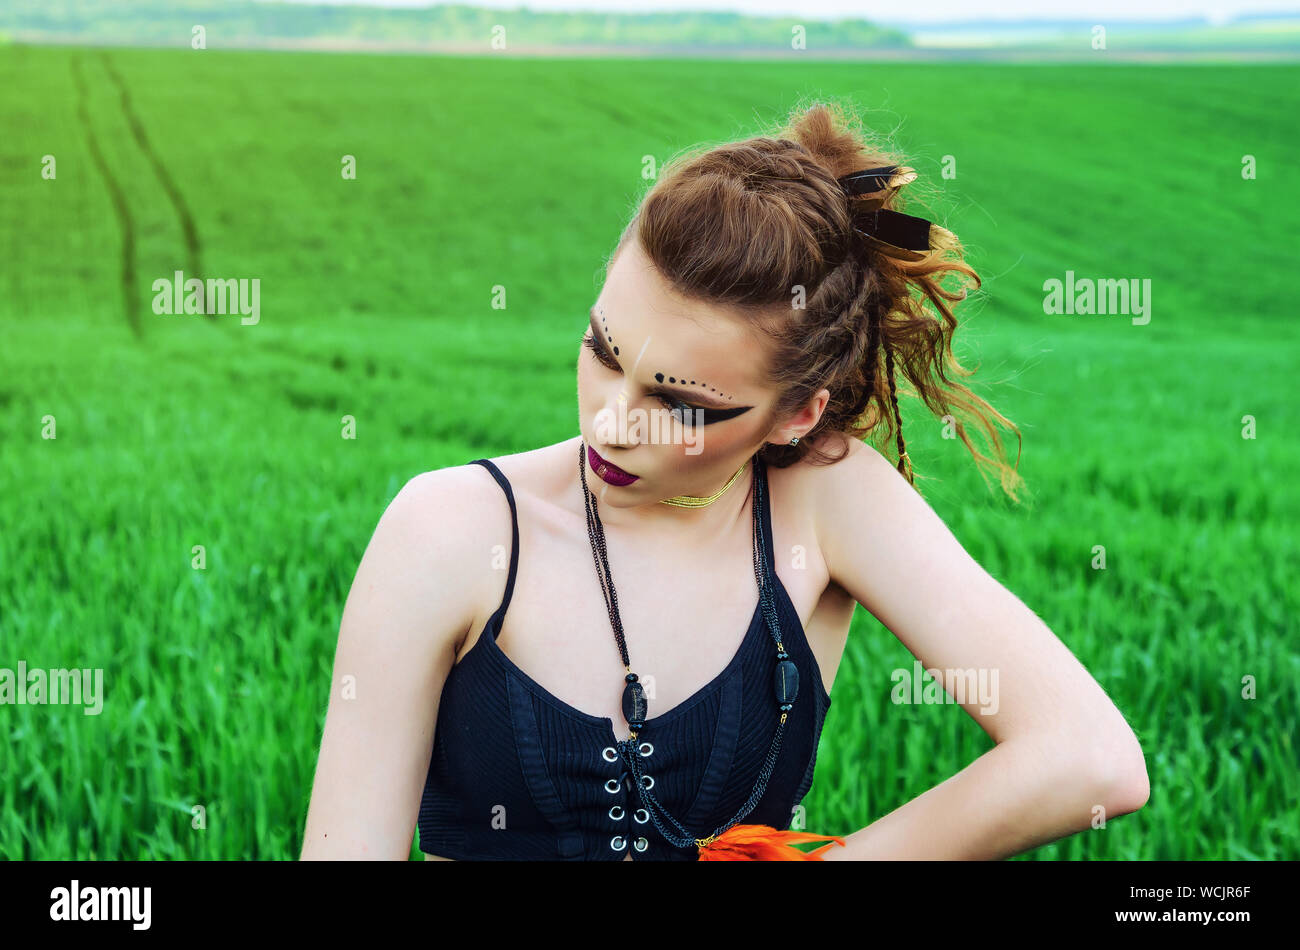 Fille maquillage agressif, amazon caractère dans un champ de blé vert. Féminisme, indépendance, tribu. Banque D'Images